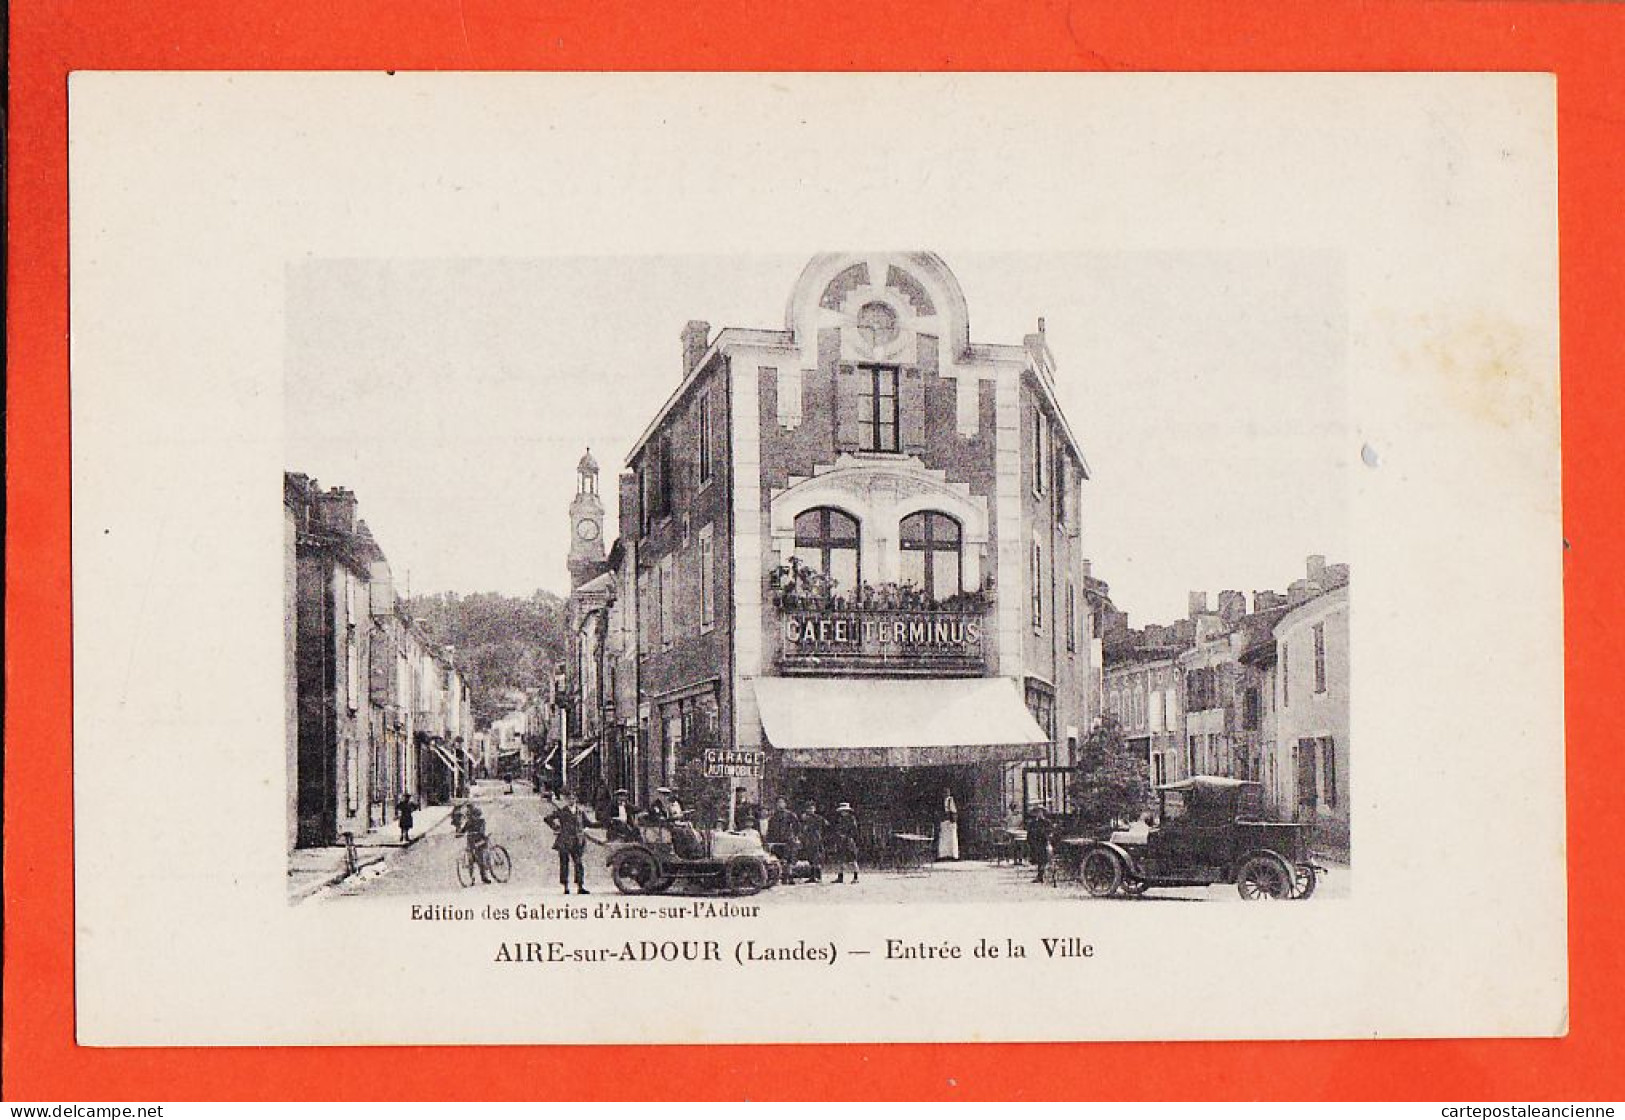 01359 / AIRE-sur-ADOUR 40-Landes Café TERMINUS Entrée De La Ville Automobiles  1910s THIRIAT Edition Galeries - Aire